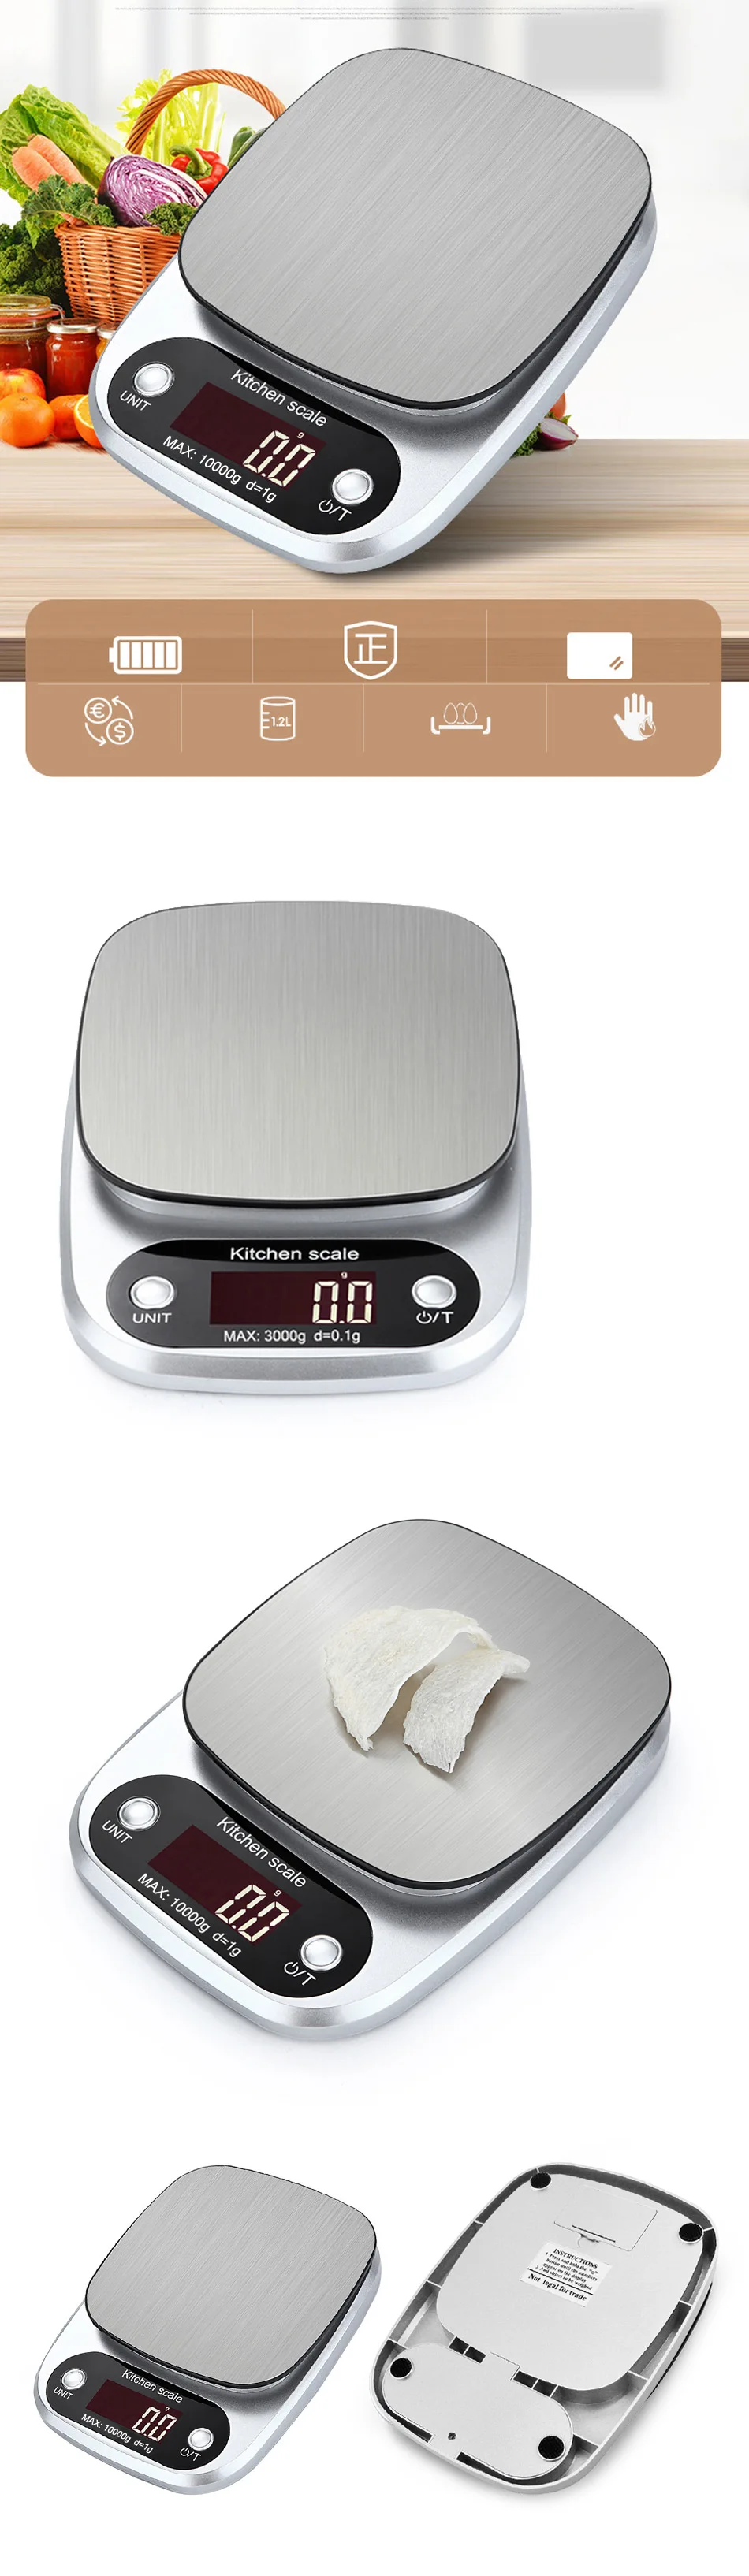 10 кг/3 кг ЖК-подсветка цифровые кухонные весы из нержавеющей стали электронные весы для приготовления пищи баланс измерения веса